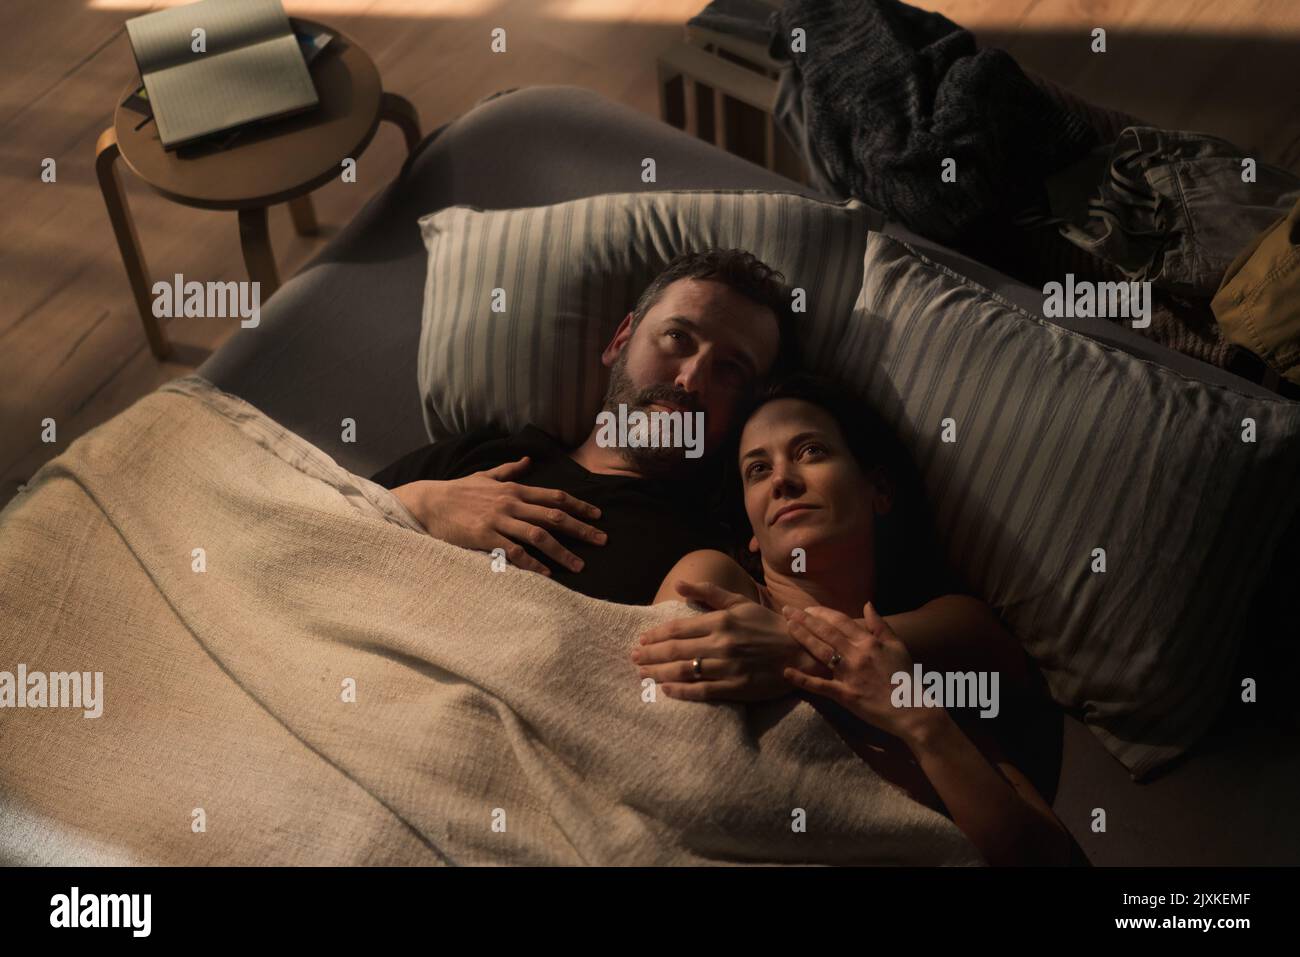 Mittelerwachsenes Paar, das nachts im Bett liegt und das Konzept von Partnerschaft und Intimität umarmt. Stockfoto